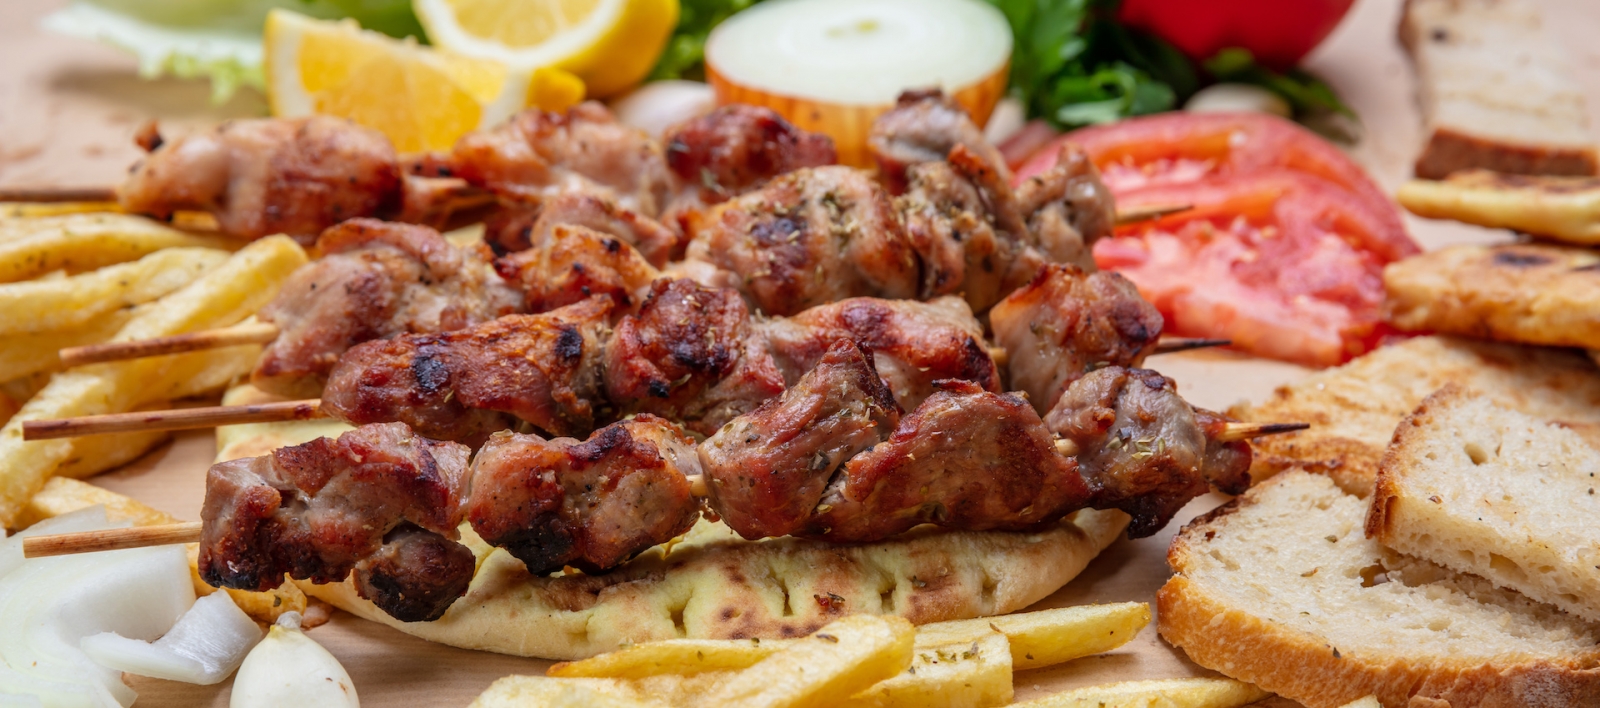 Souvlaki, brochettes de viande, viande traditionnelle grecque turque sur pain pita et pommes de terre